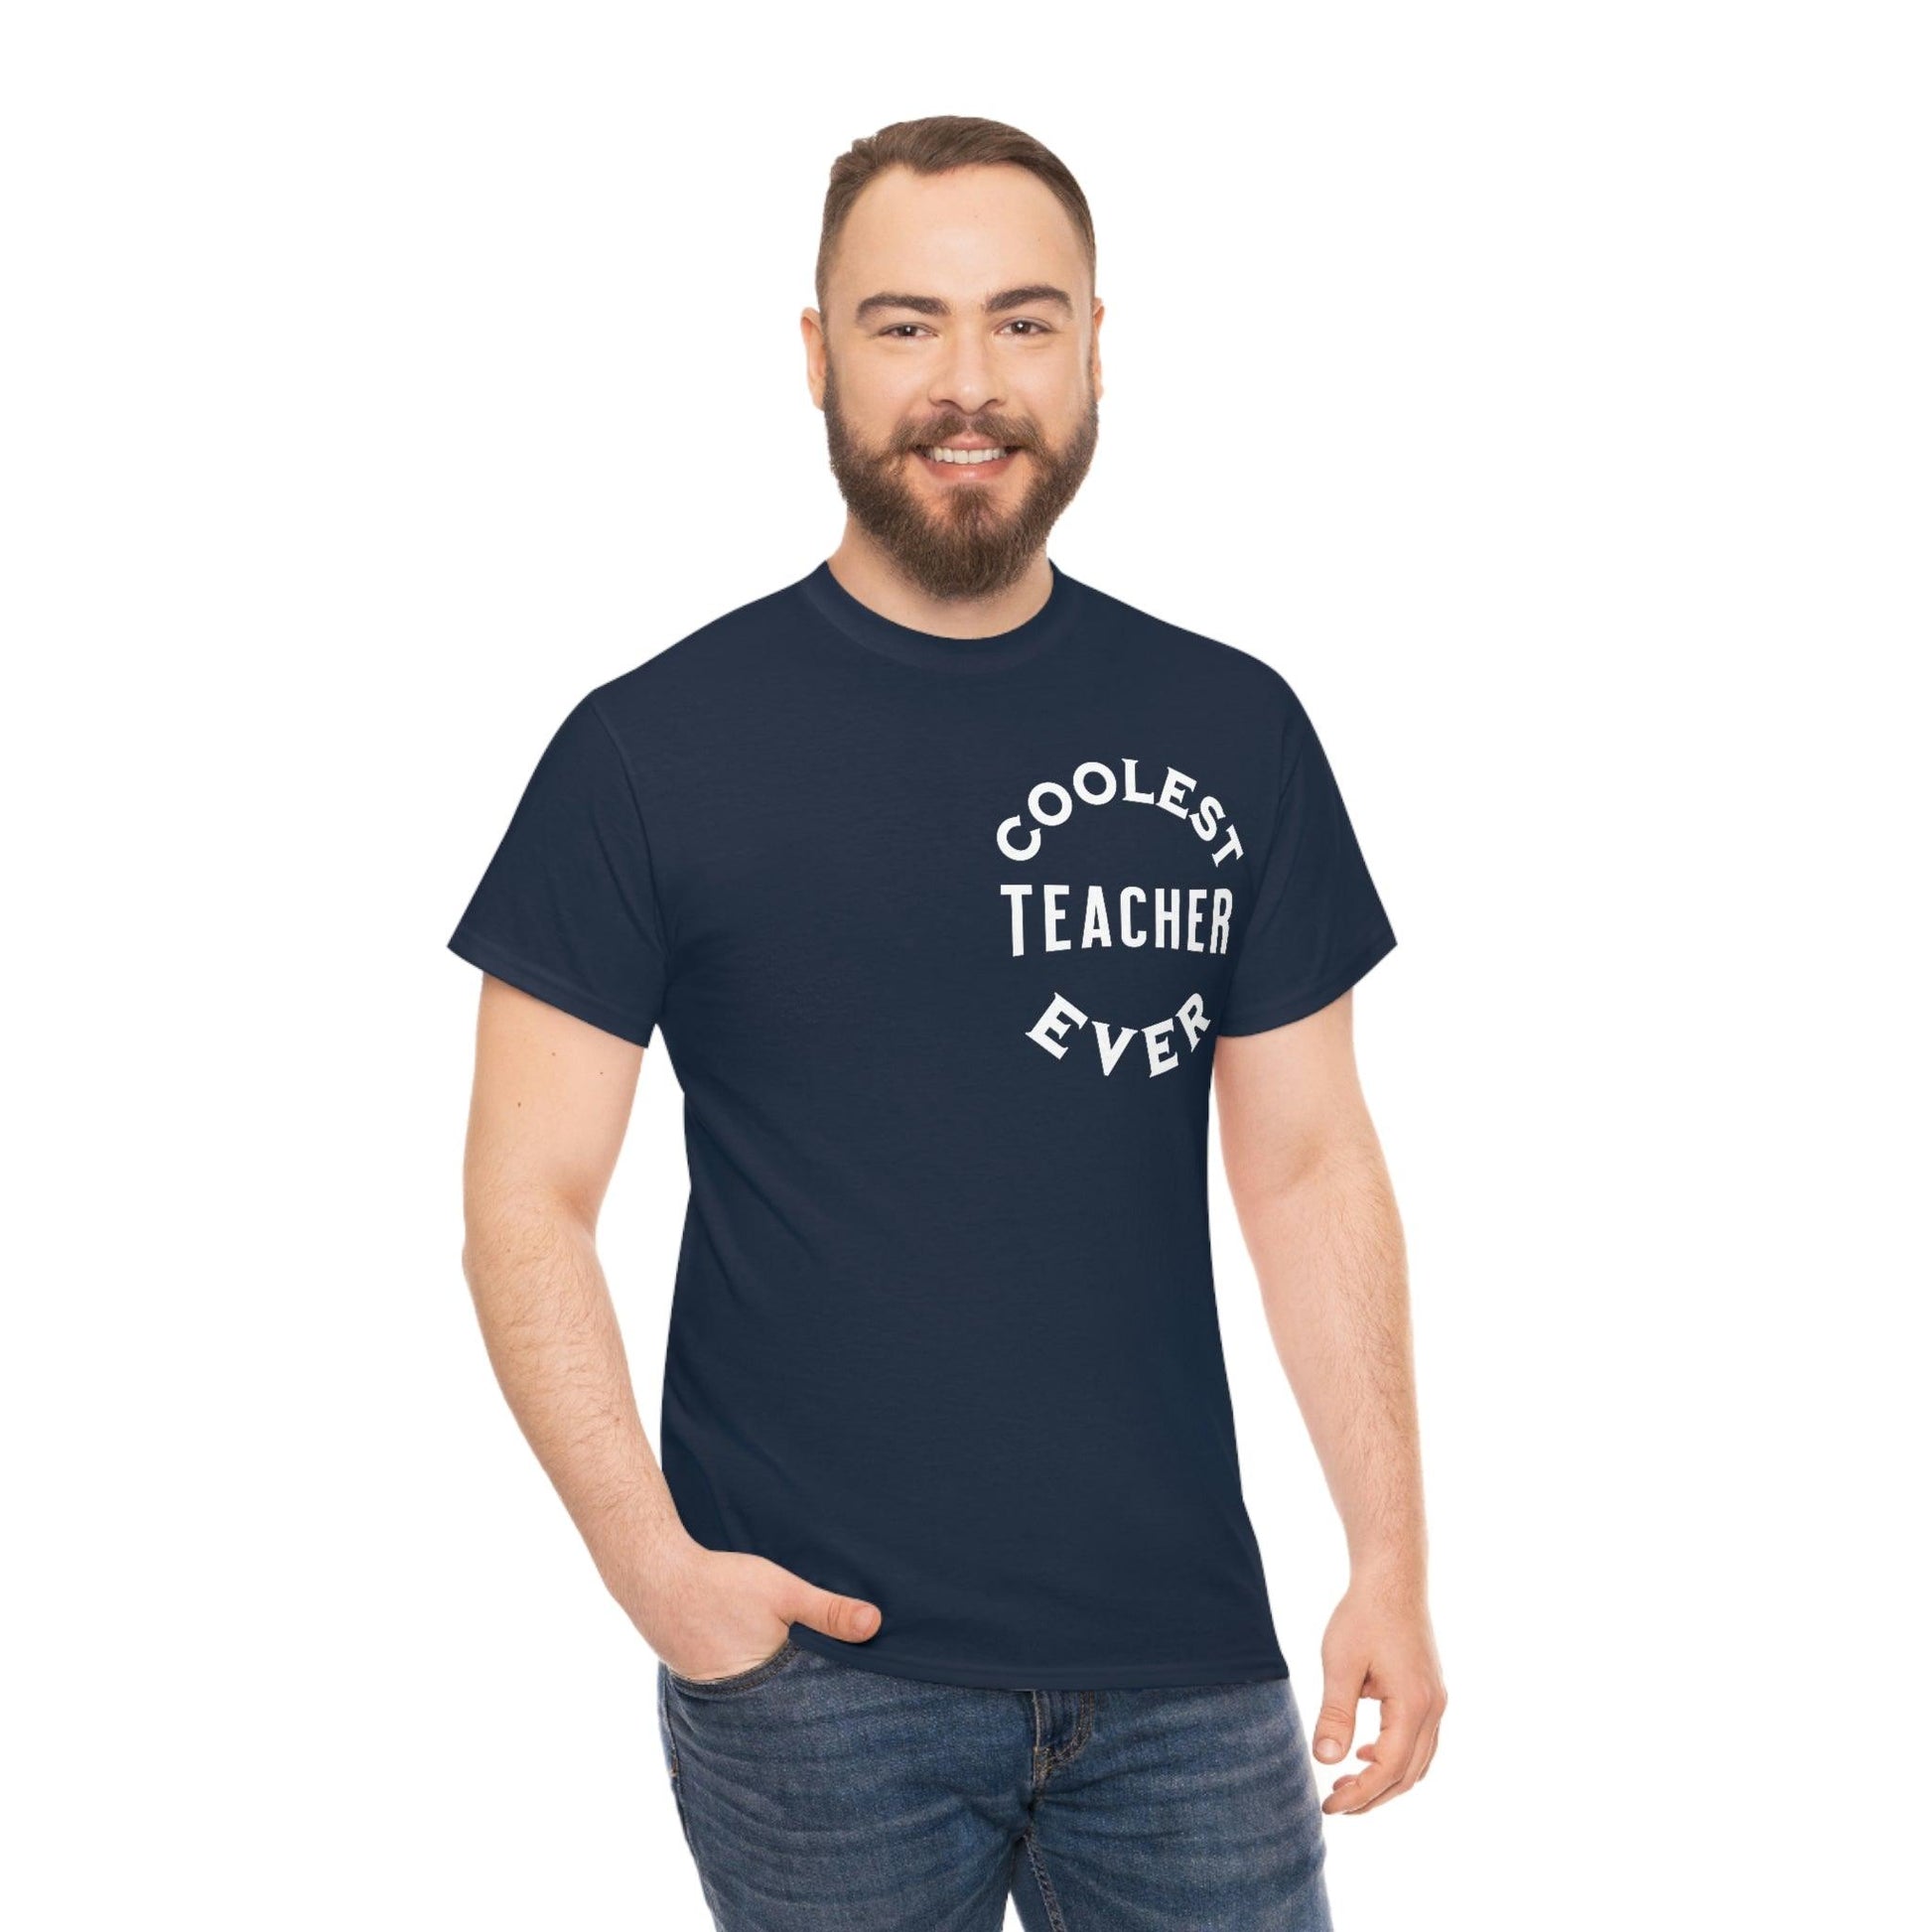 Coolest Teacher Ever Shirt - gift for teachers - teacher appreciation gift - Giftsmojo